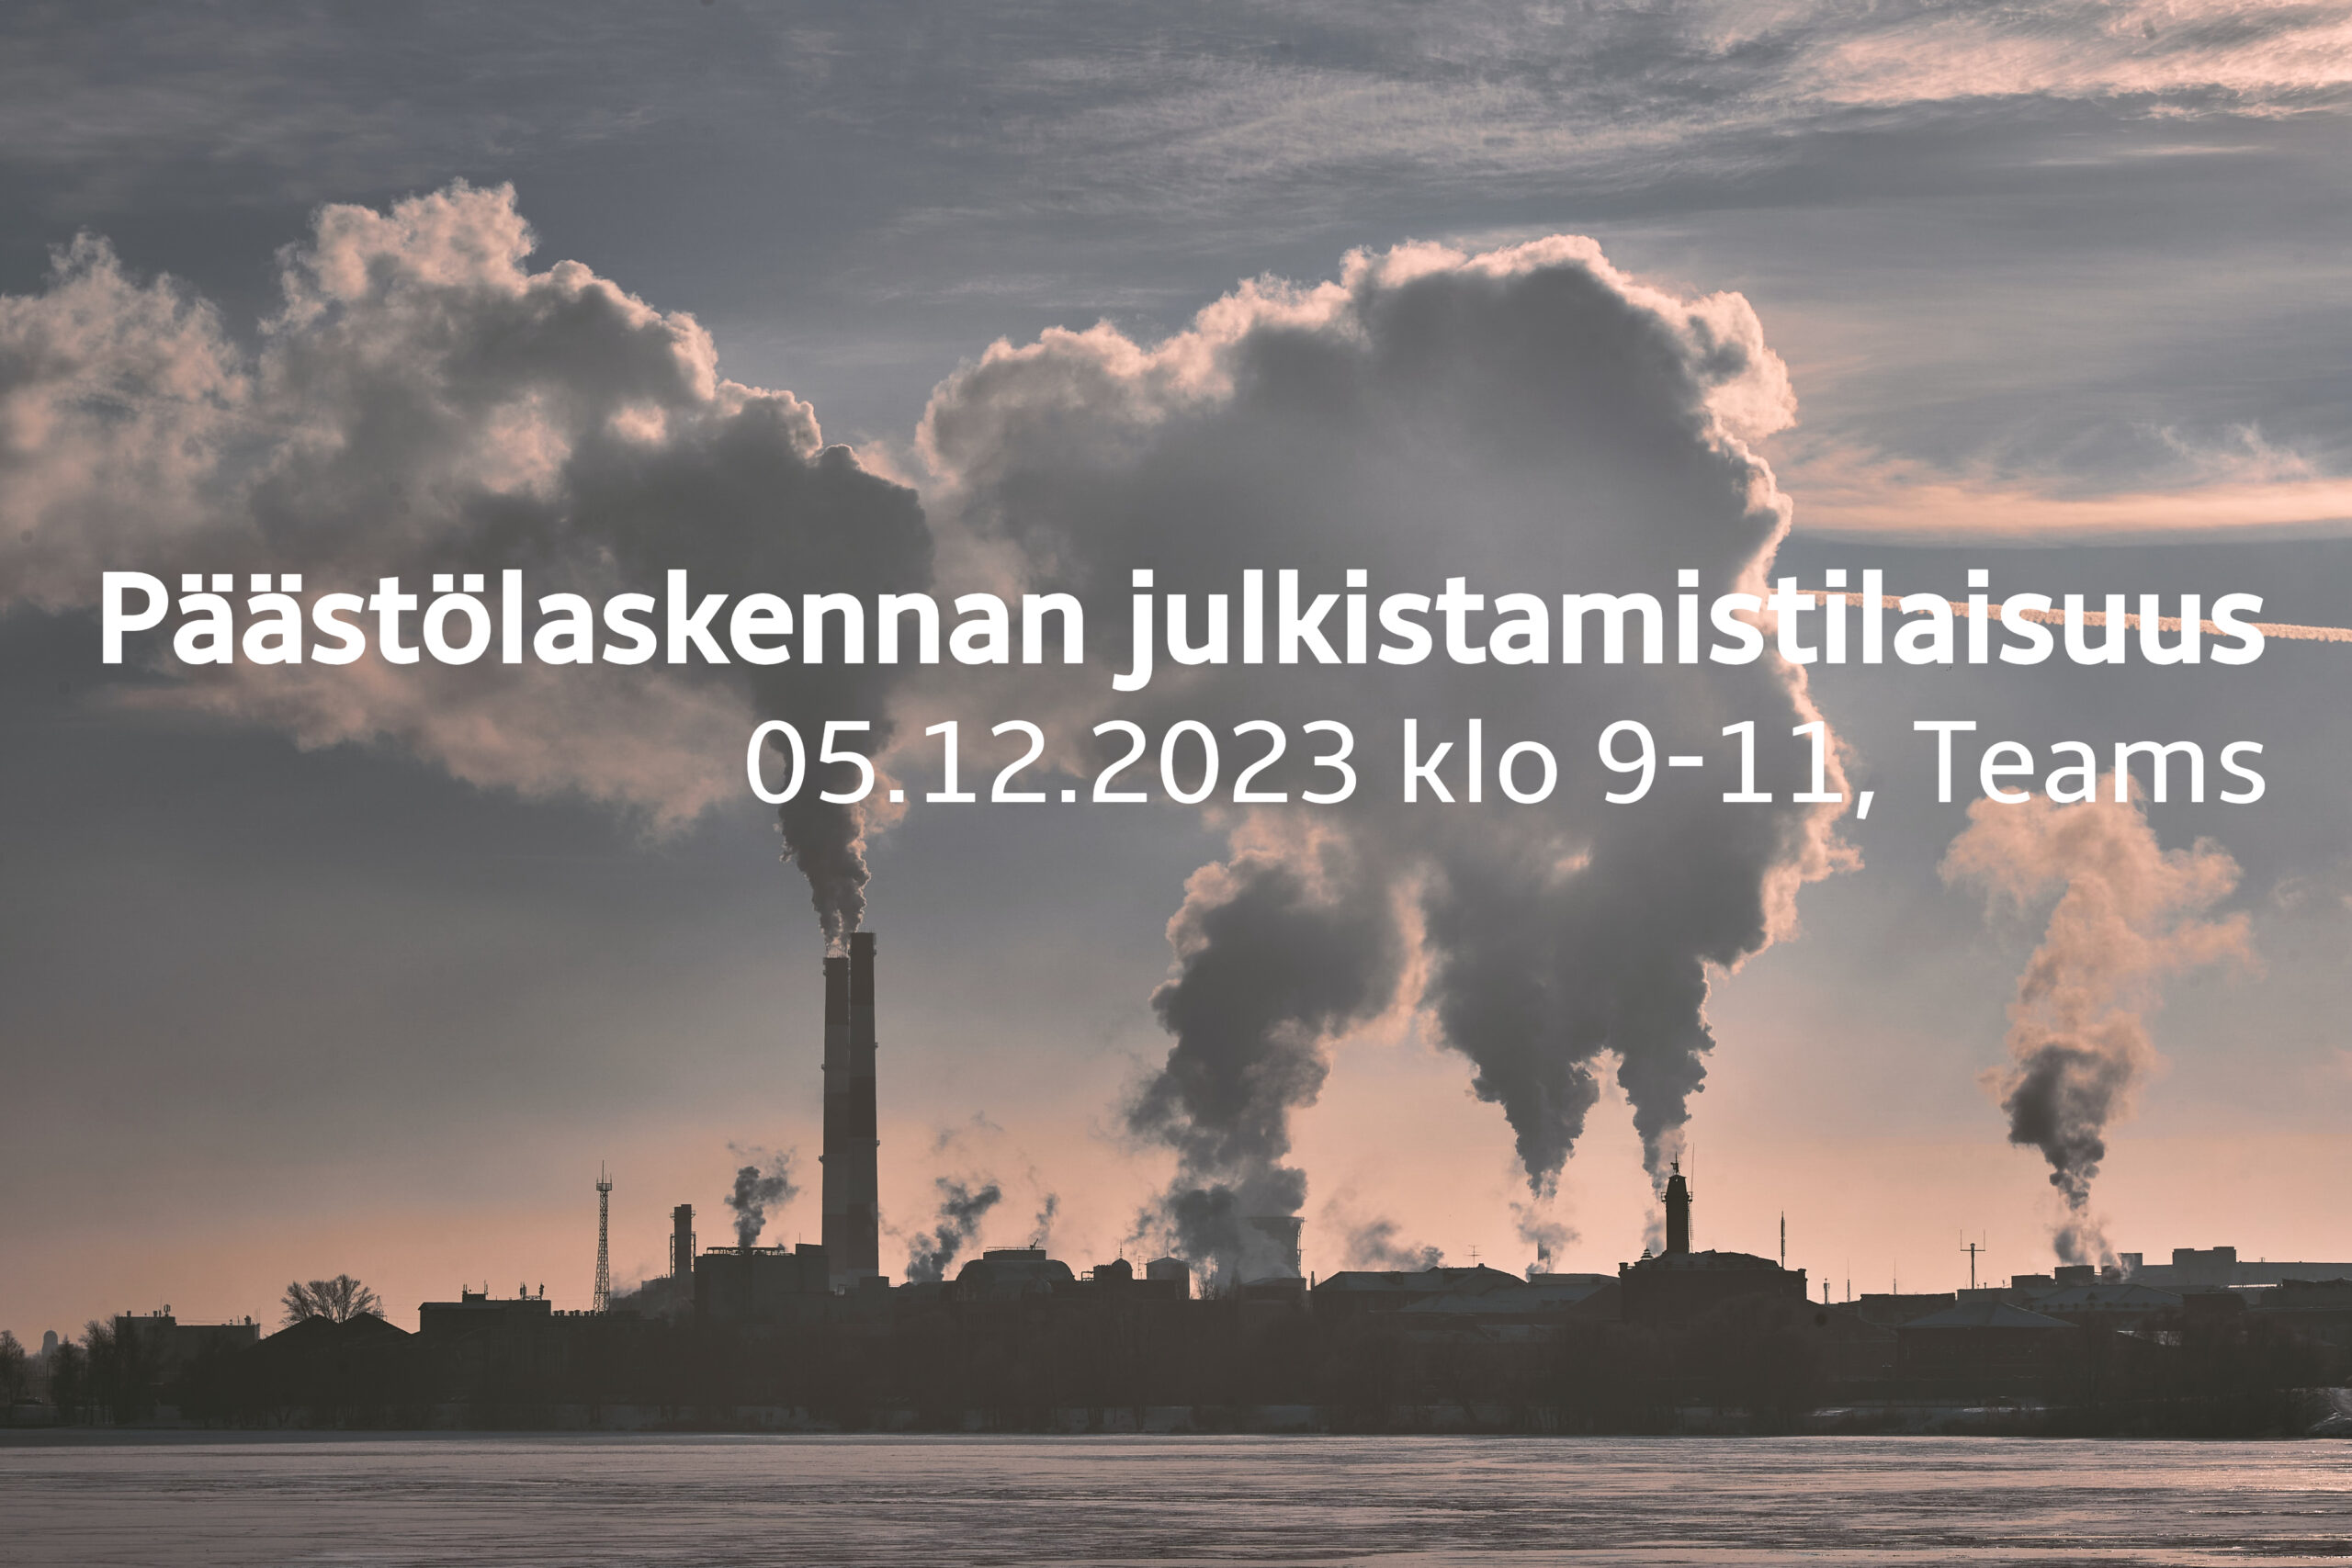 Kuvassa on kuva tehtaan siluetista veden äärellä. Kuvassa lukee: "Ihku-info: Päästölaskennan julkistamistilaisuus. 05.12.2023 klo 9-11, Teams".